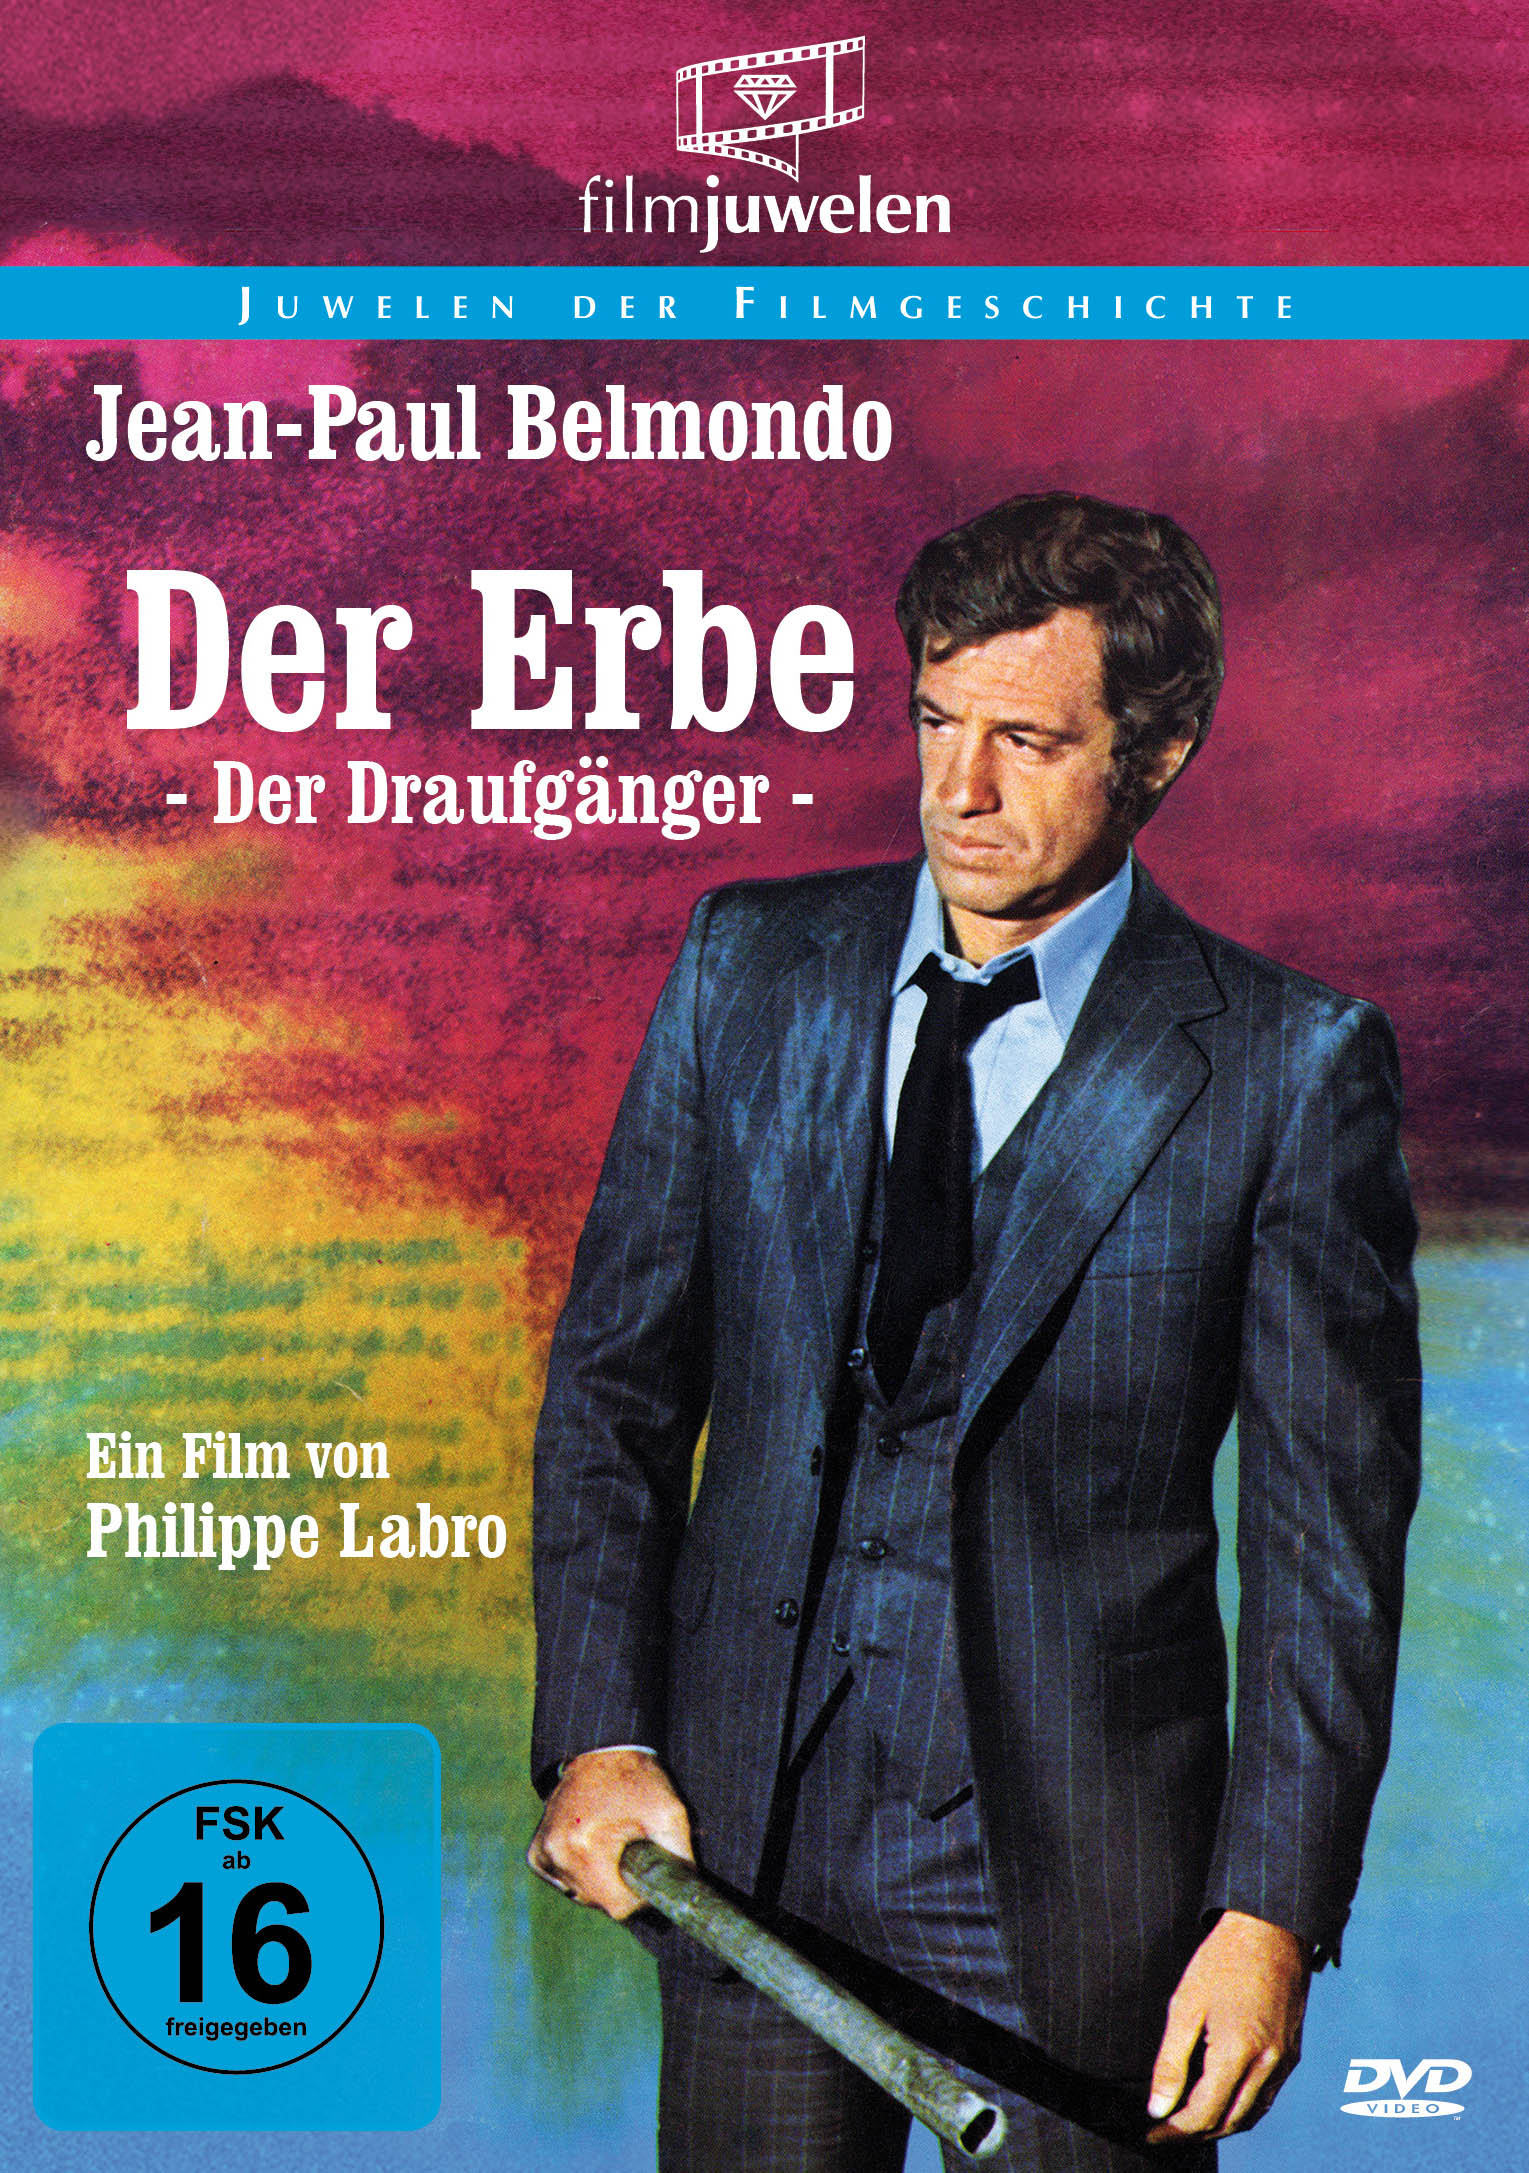 Der Erbe (Der Draufgänger) (Jean-Paul Belmondo)